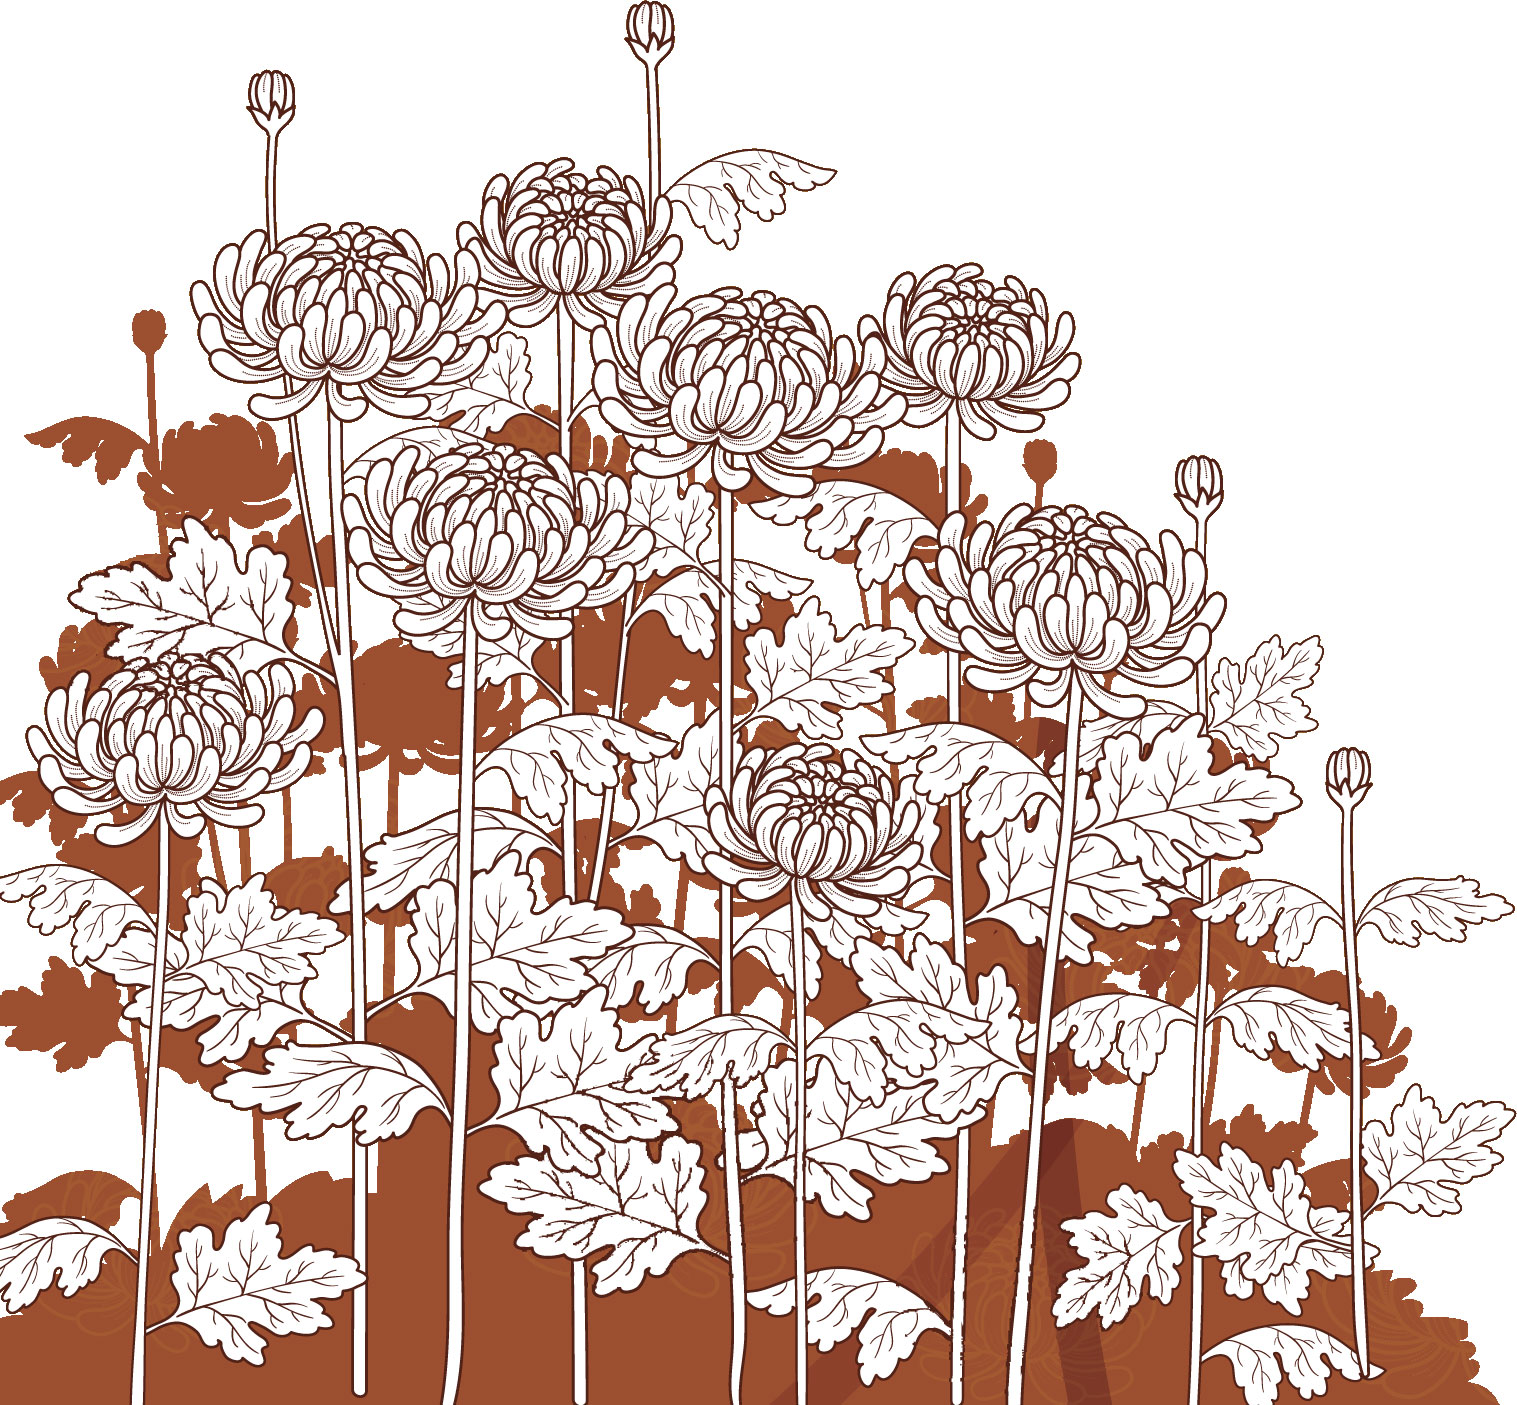 リアルな花のイラスト フリー素材 白黒 モノクロno 21 群生の菊 白 影